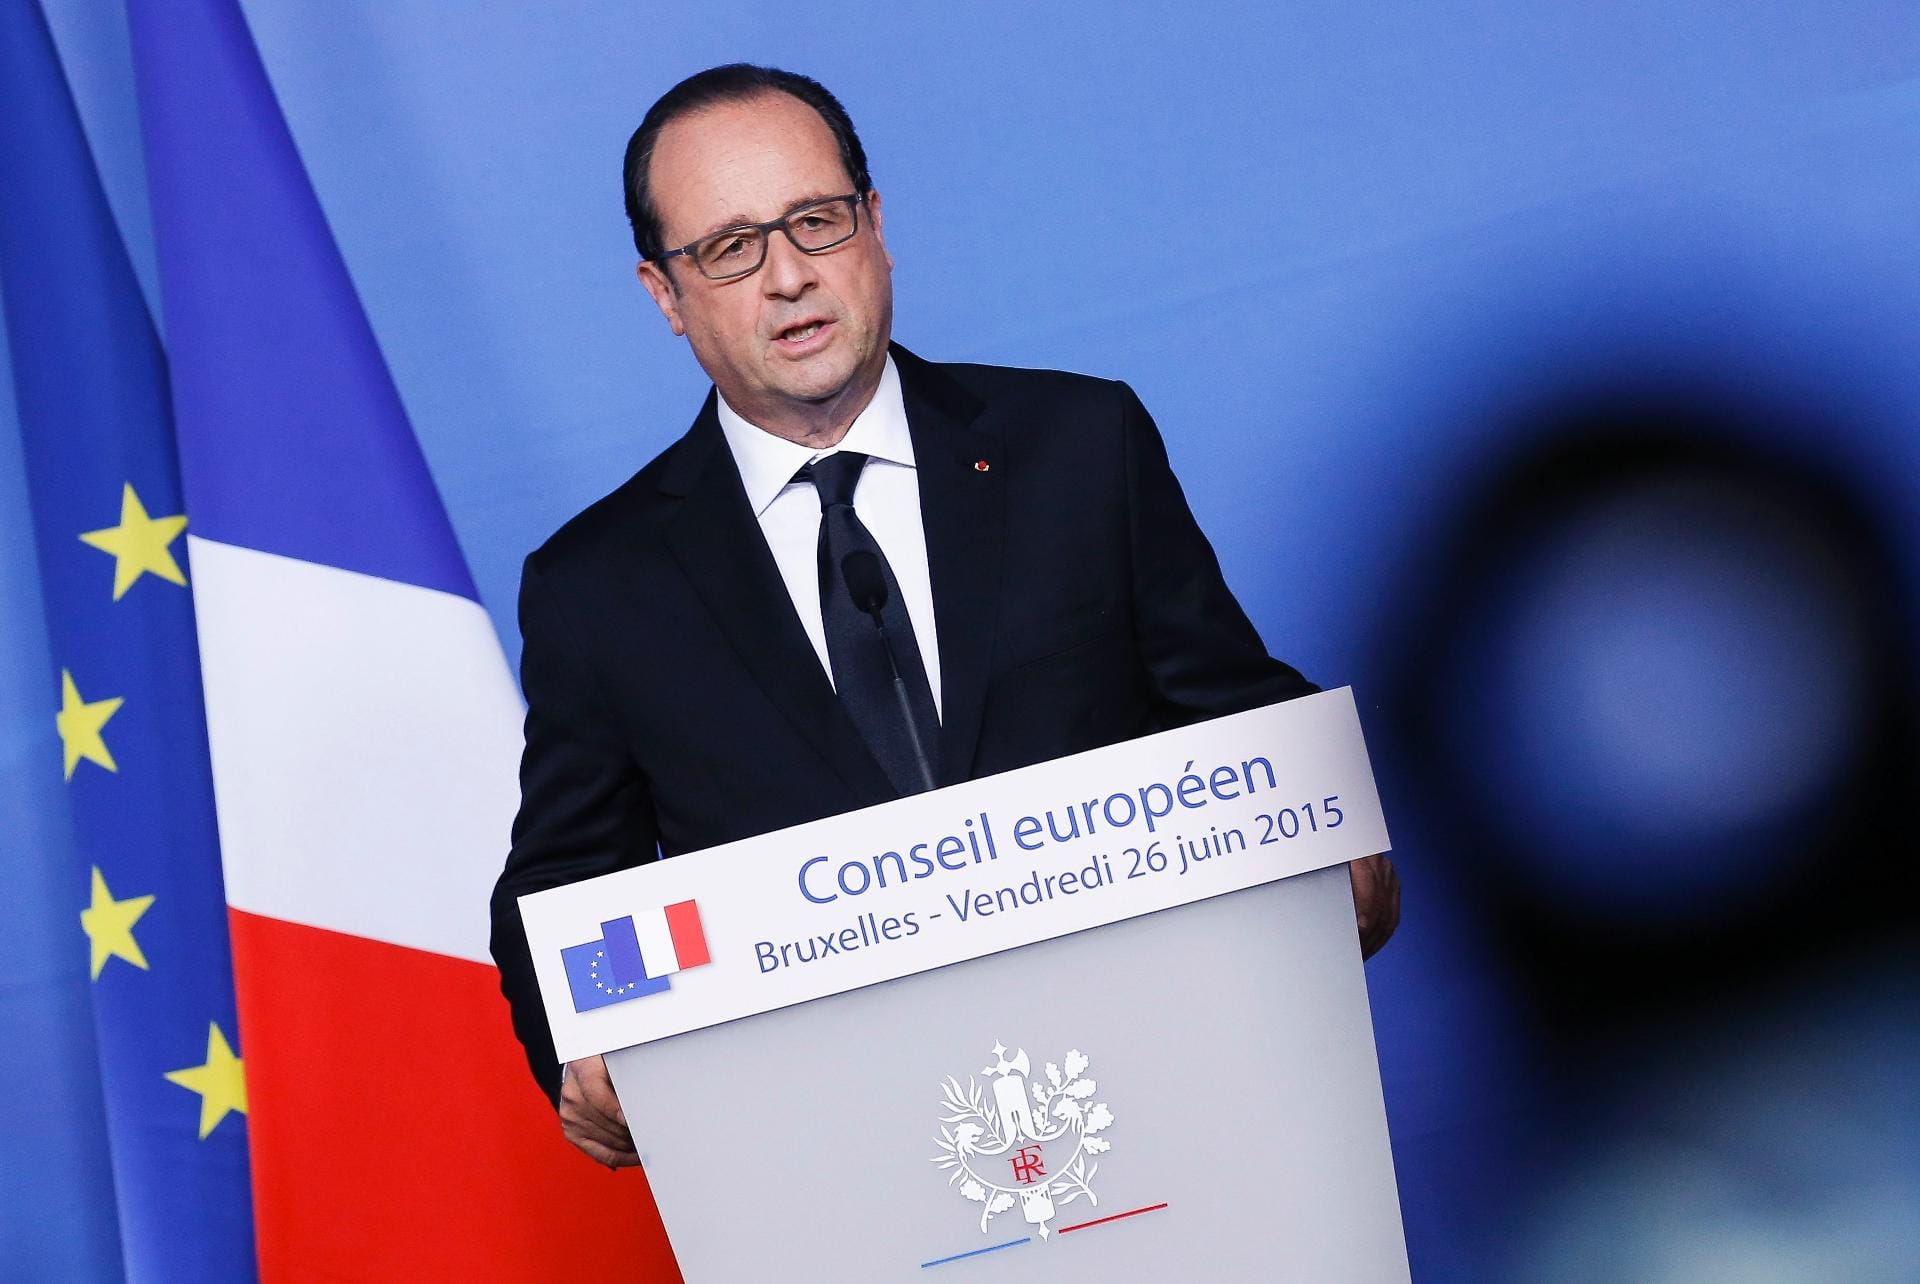 "Es gibt jetzt viele Emotionen, aber Emotionen können nicht die einzige Antwort sein", sagte der französische Präsident François Hollande.